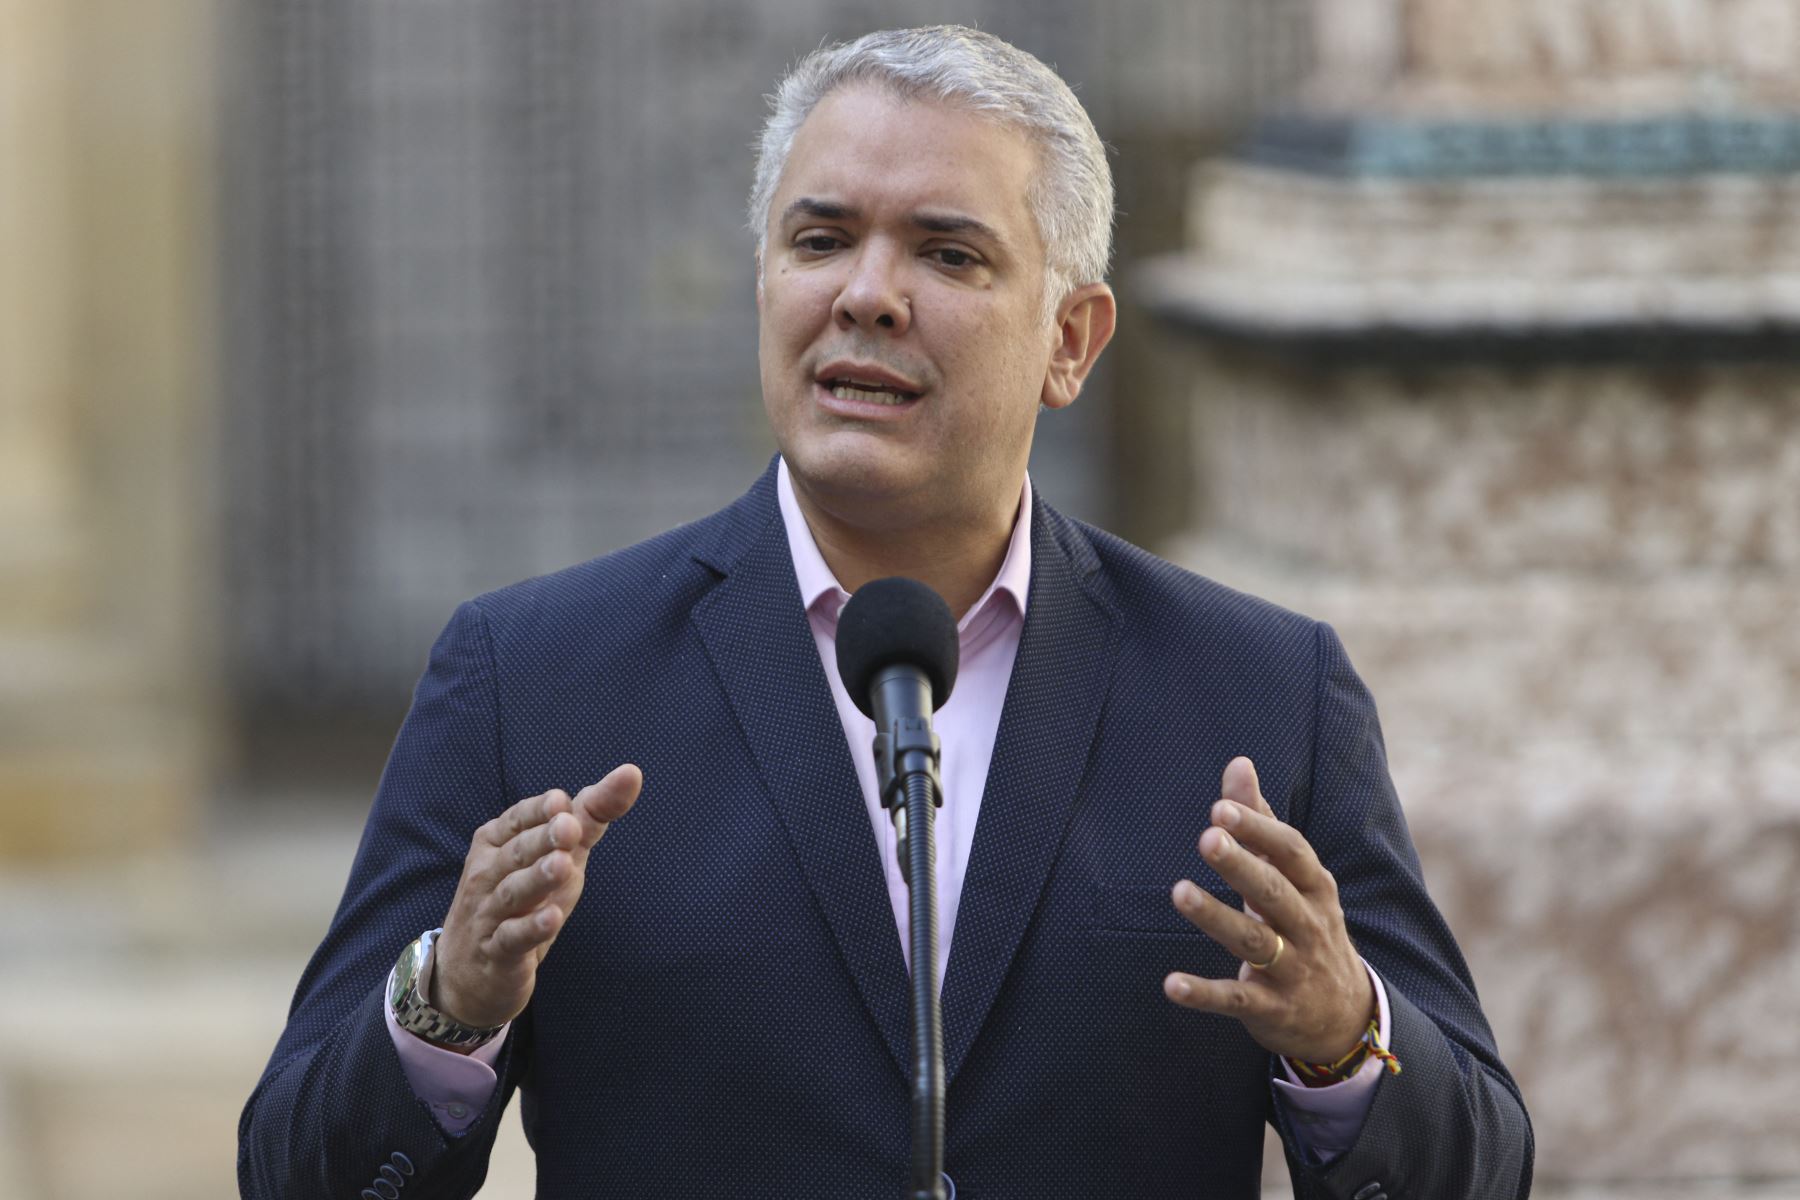 El mandatario colombiano respondió pidiendo "a quienes están lacerando un pueblo inverne" no dar lecciones de paz. Foto: AFP